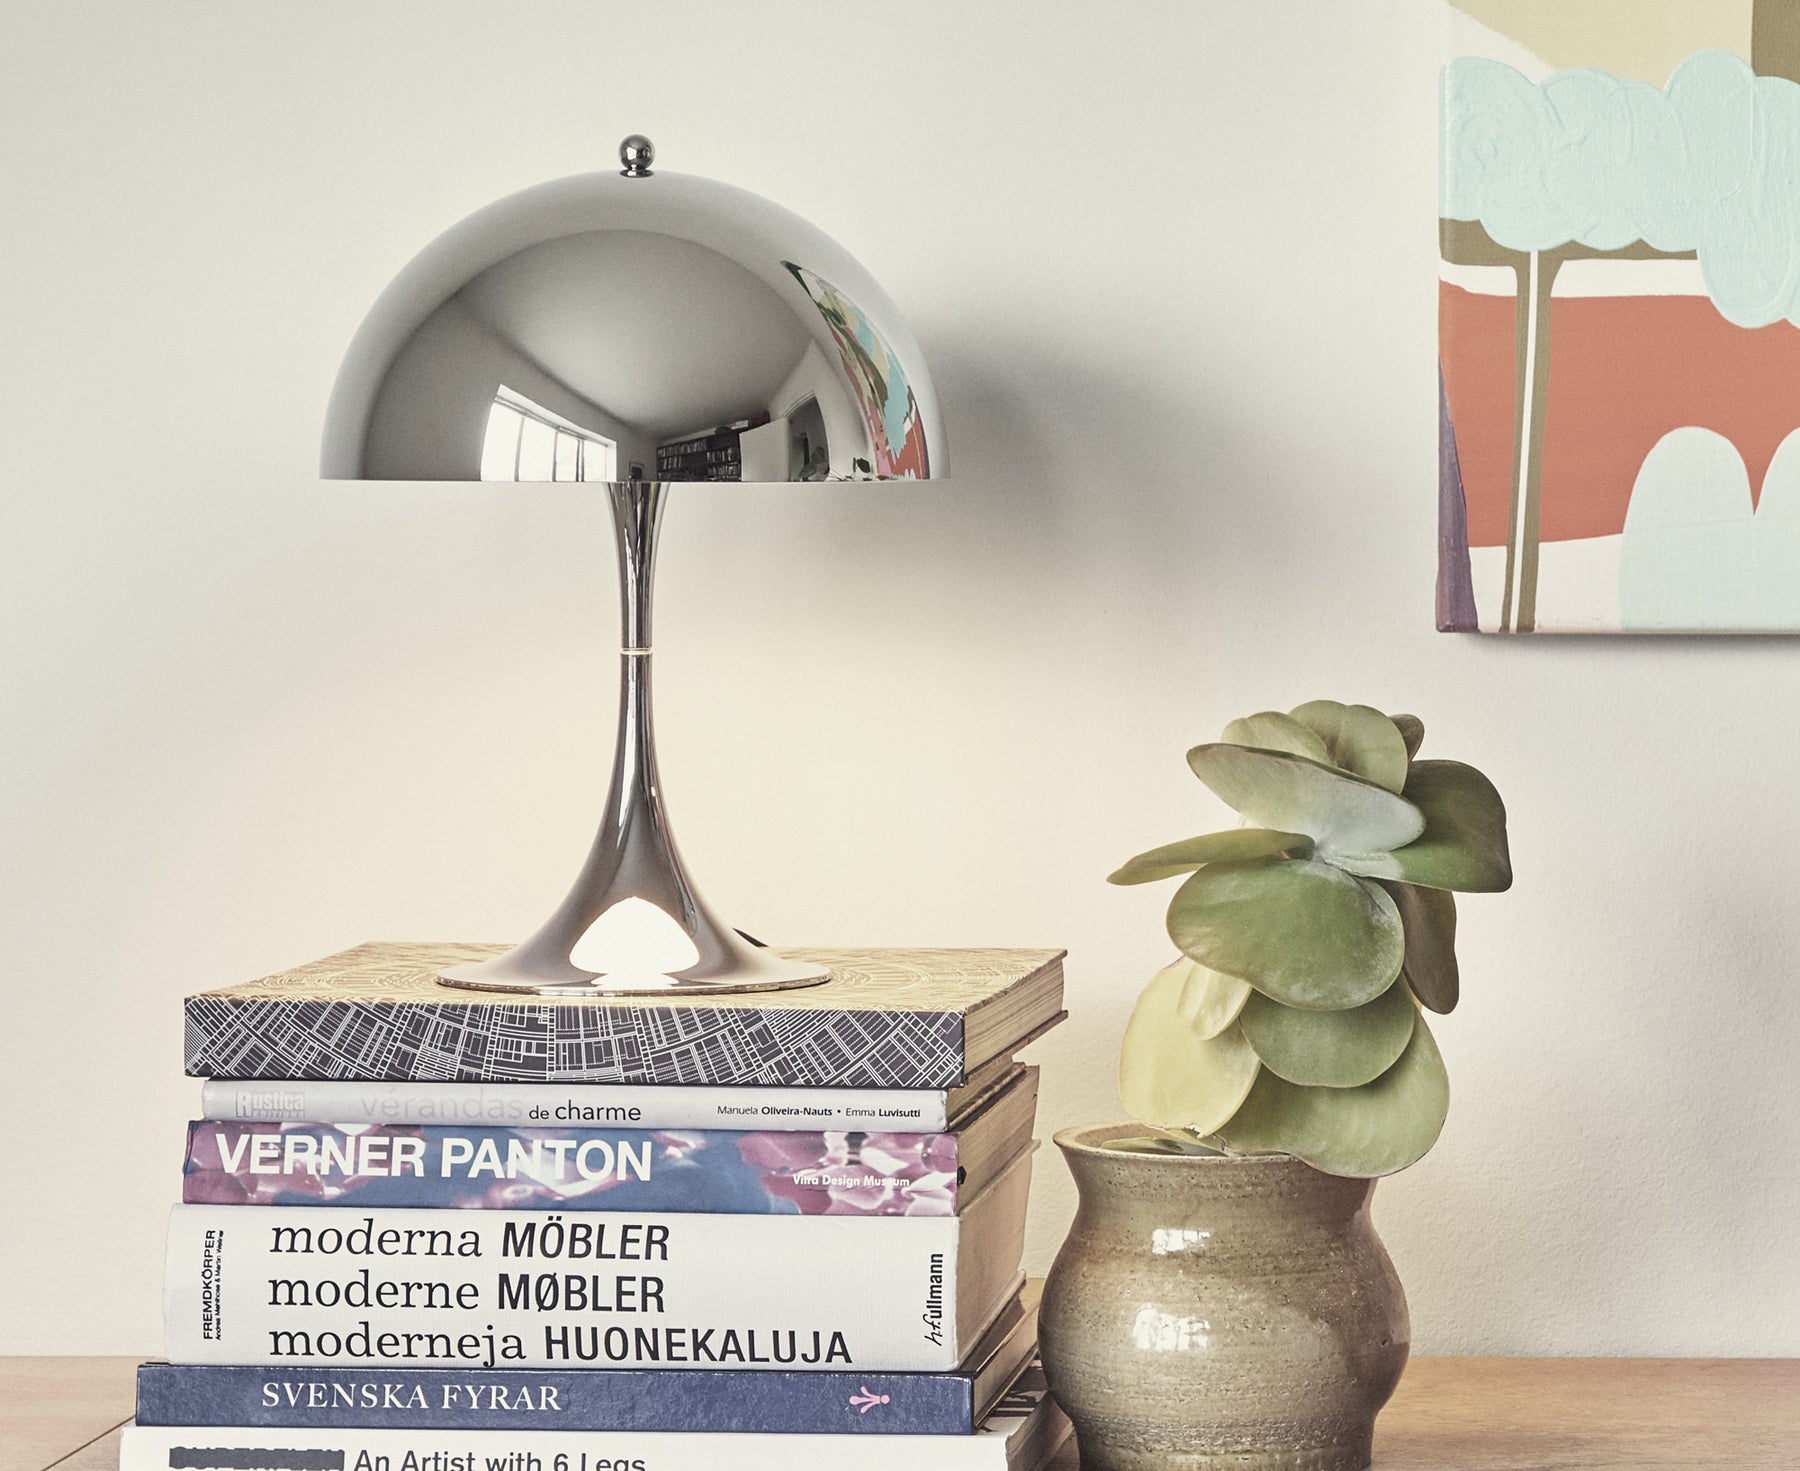 Panthella Mini Table Lamp by Louis Poulsen